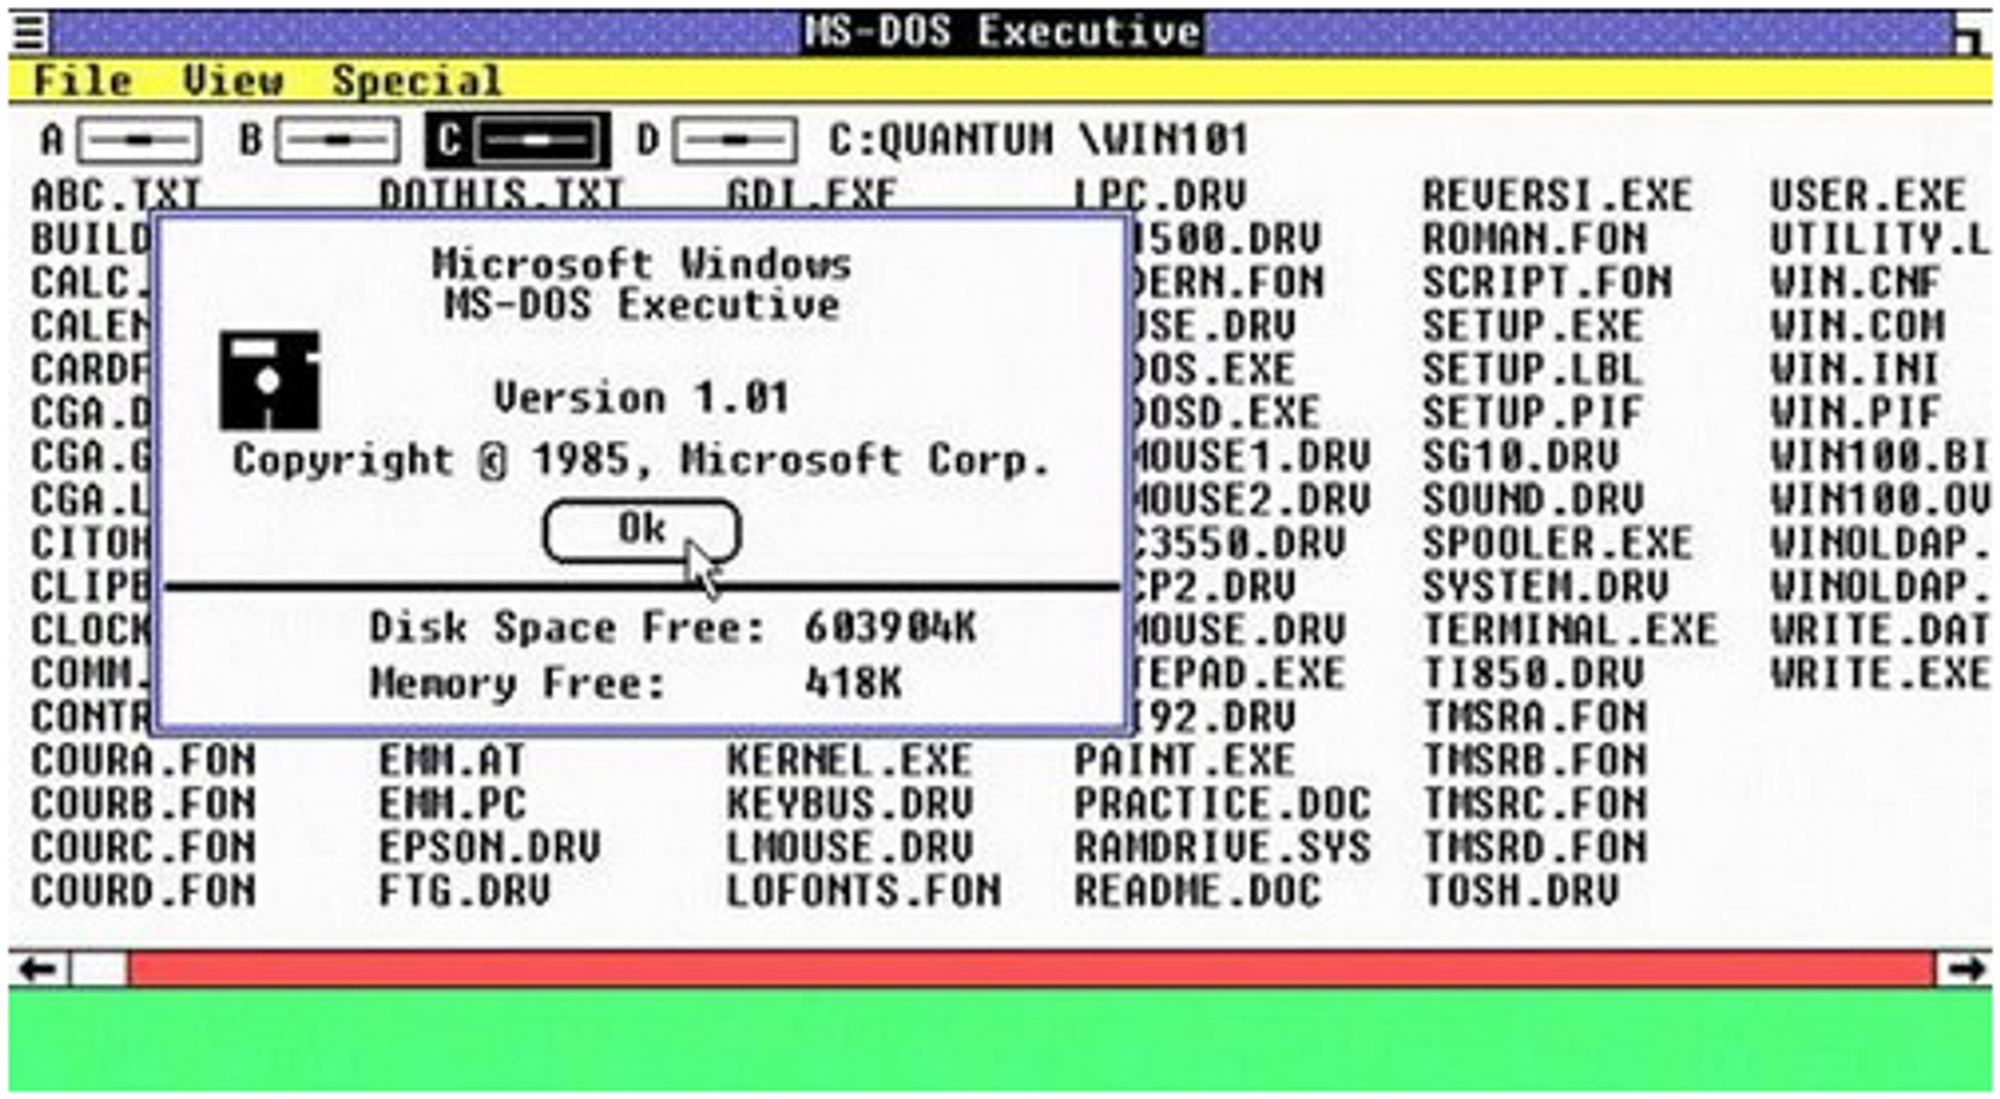 MS-DOS Executive in Windows 1.0, som i praksis var den første utgaven av Windows Explorer.